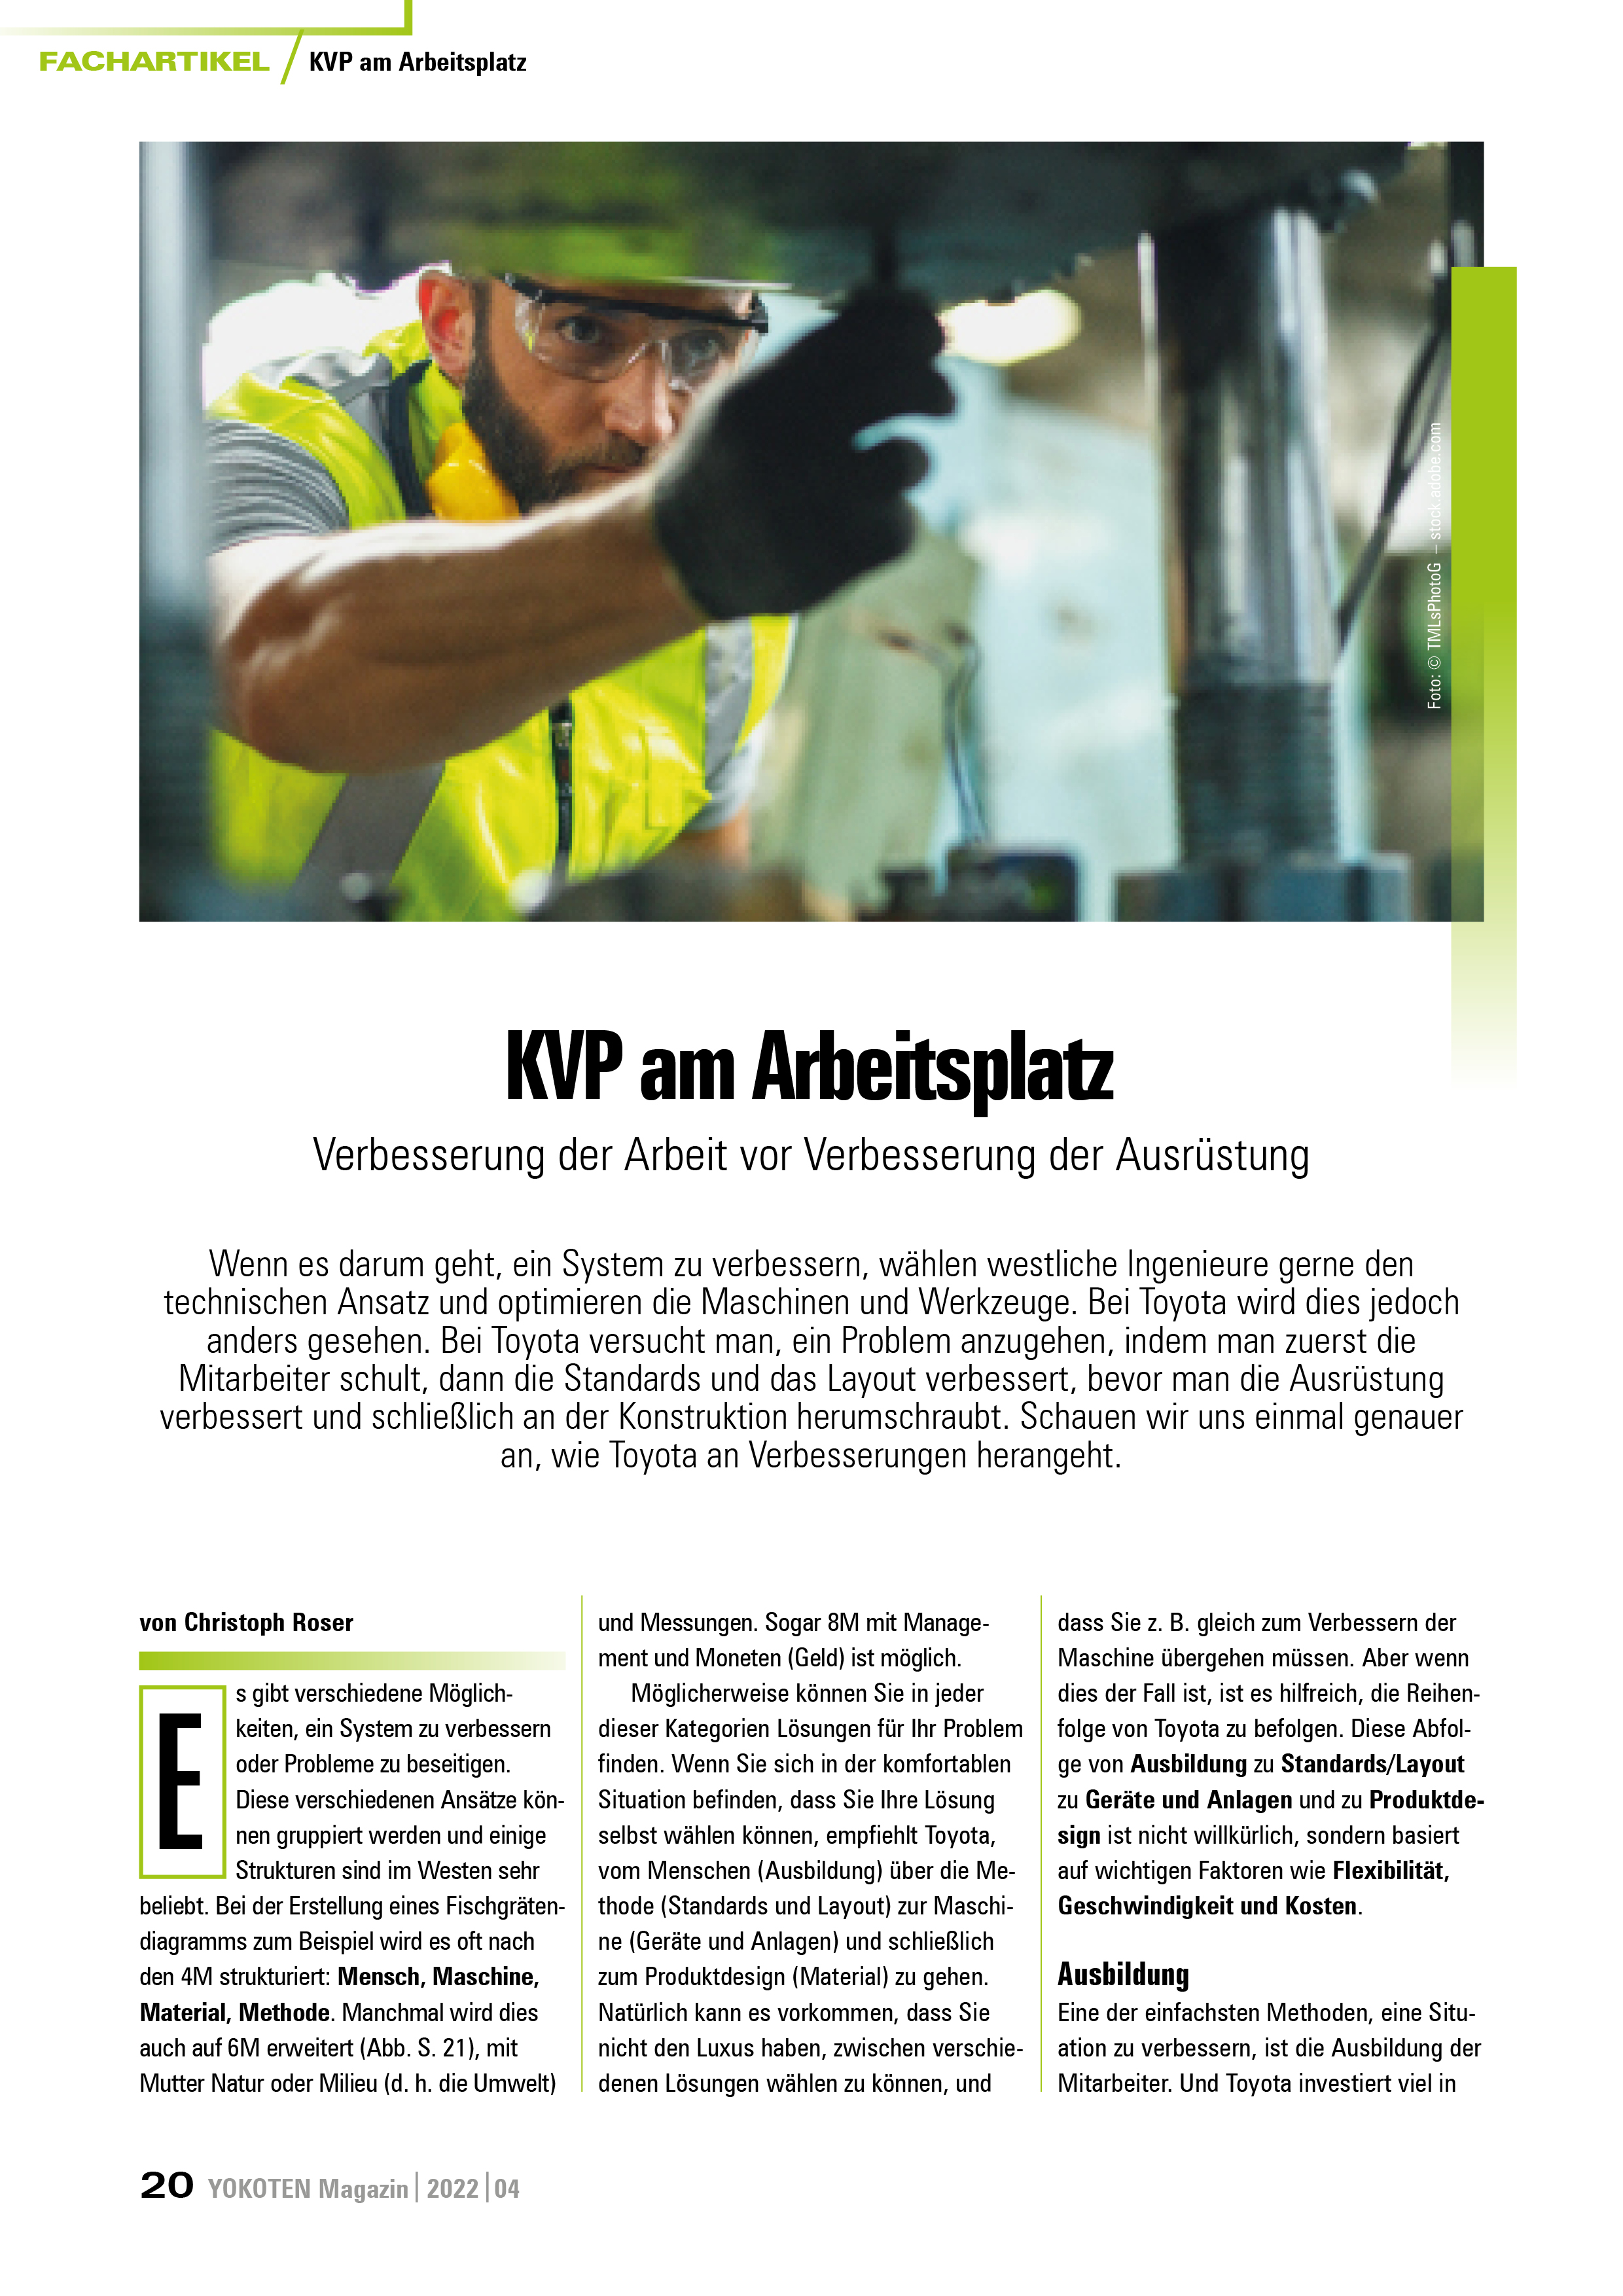 KVP am Arbeitsplatz - Artikel aus Fachmagazin YOKOTEN 2022-04